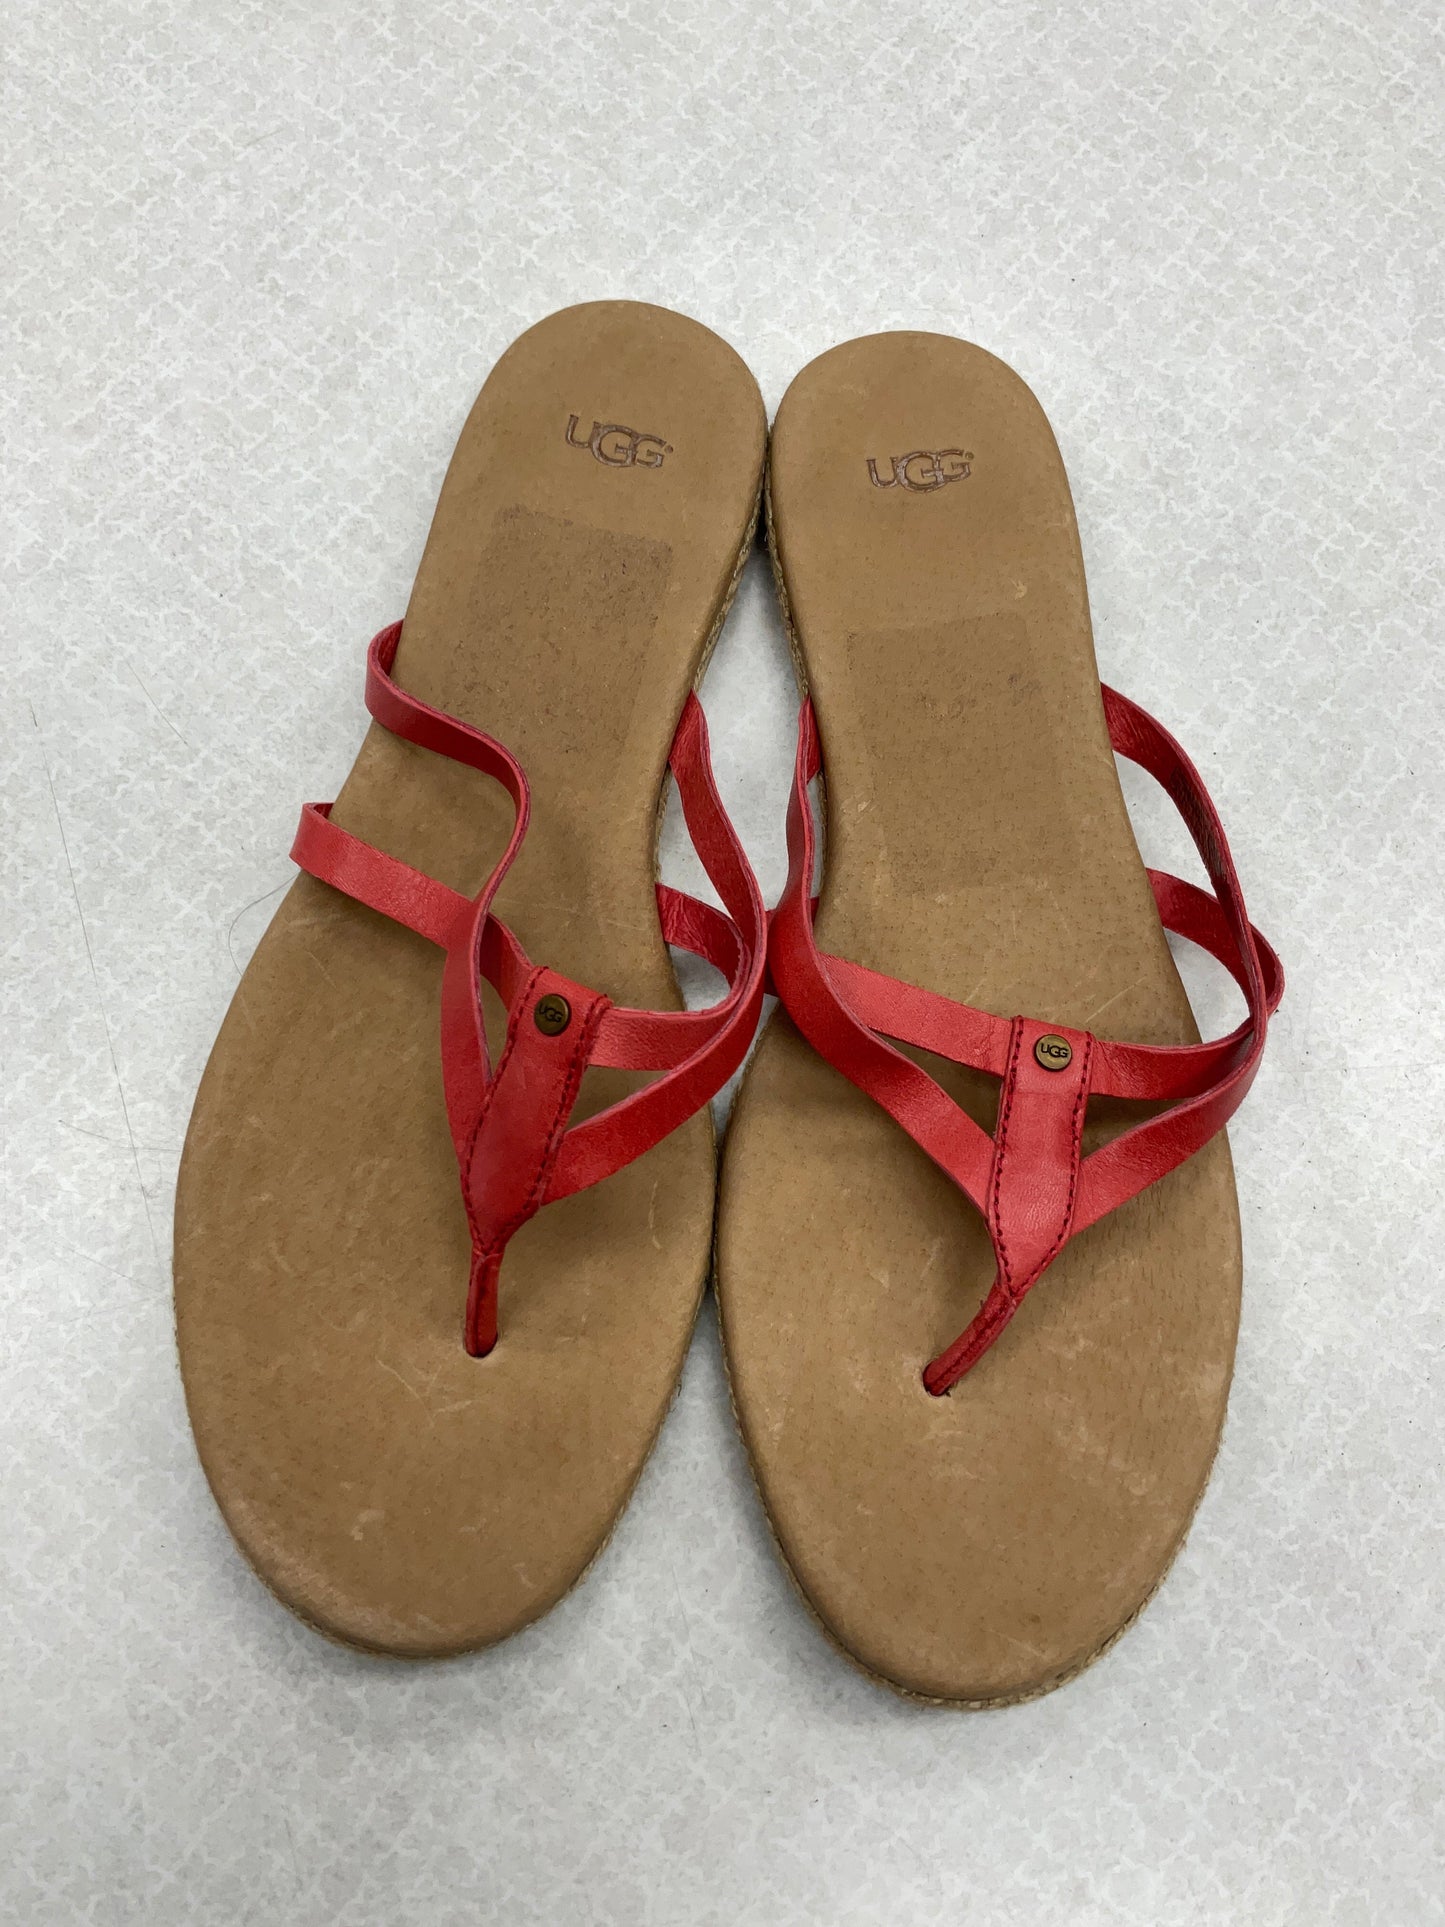 Sandals Flip Flops By Ugg  Size: 10